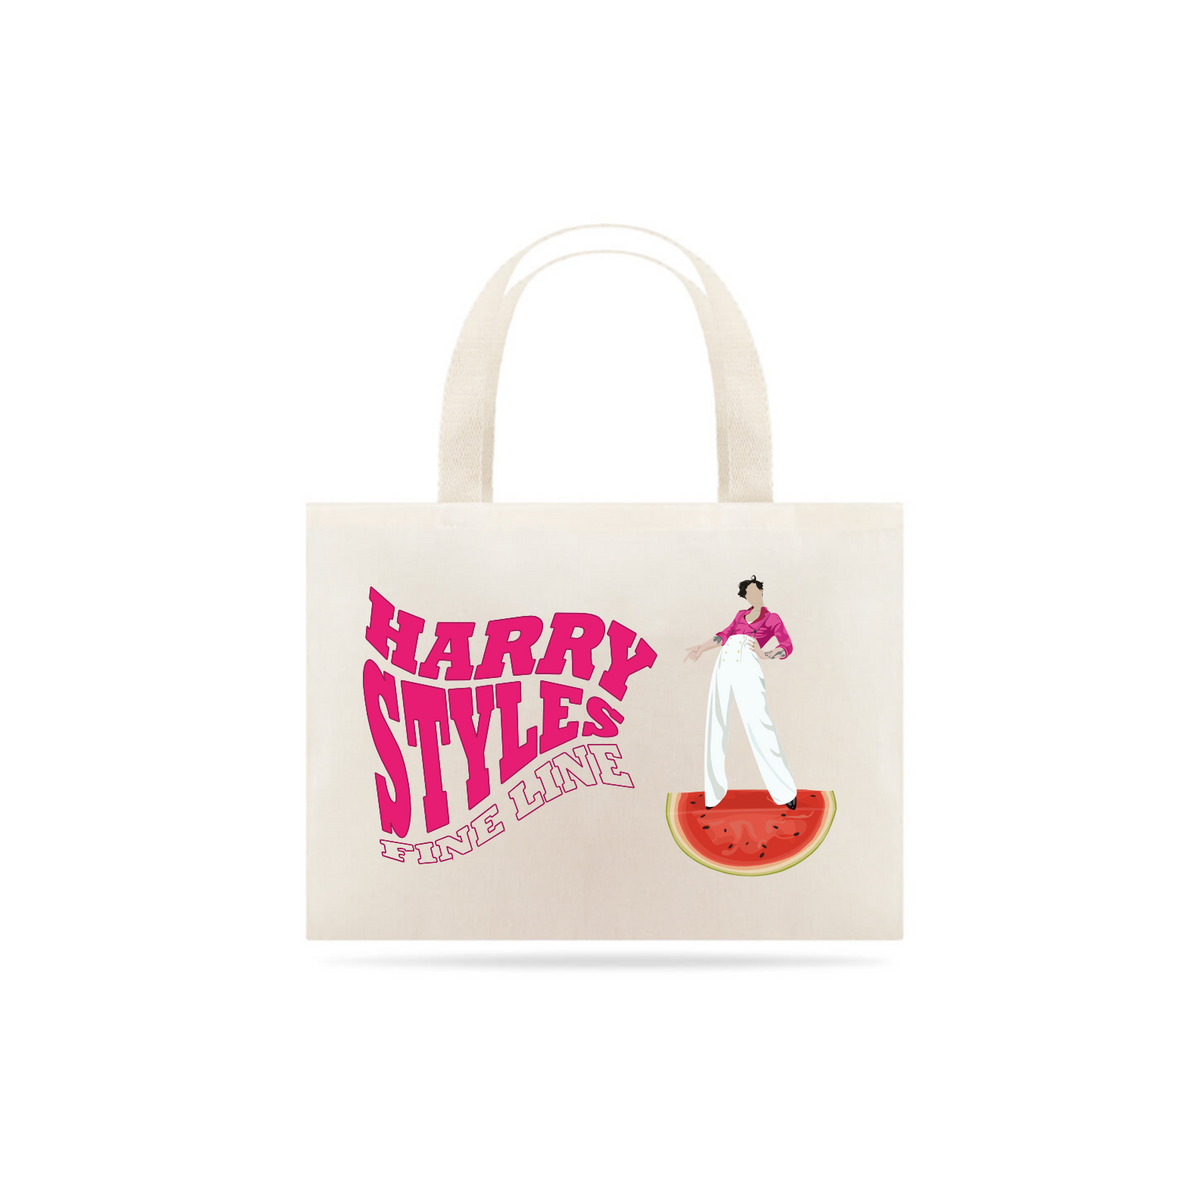 Nome do produto: Harry Styles Eco Bag 